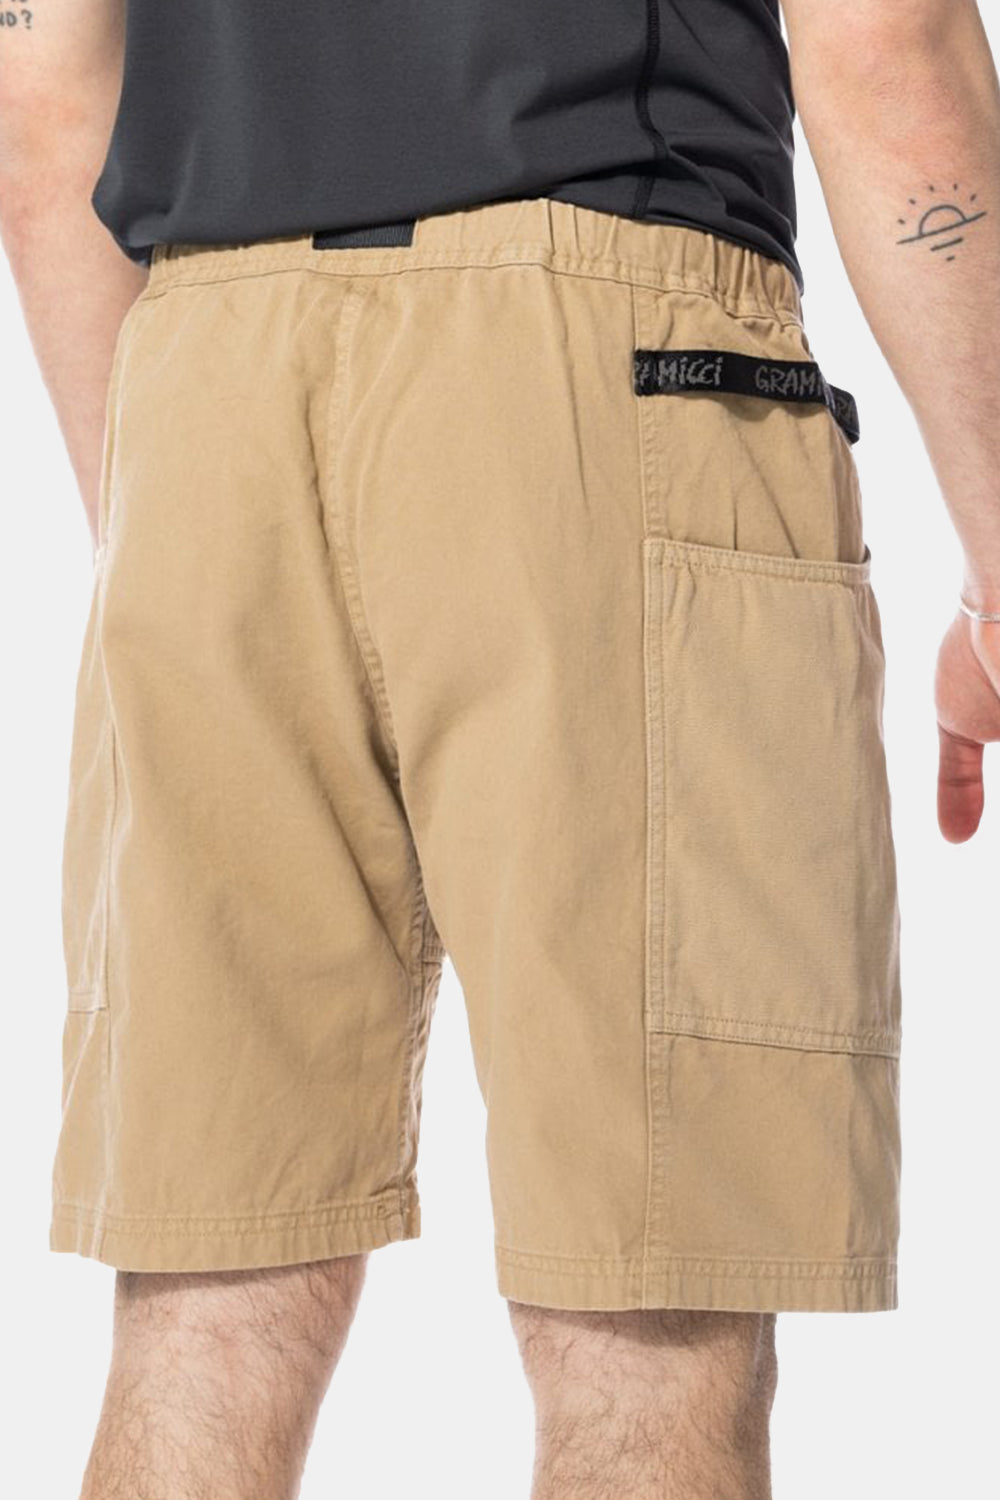 Gramicci Gadget Shorts (Chino)